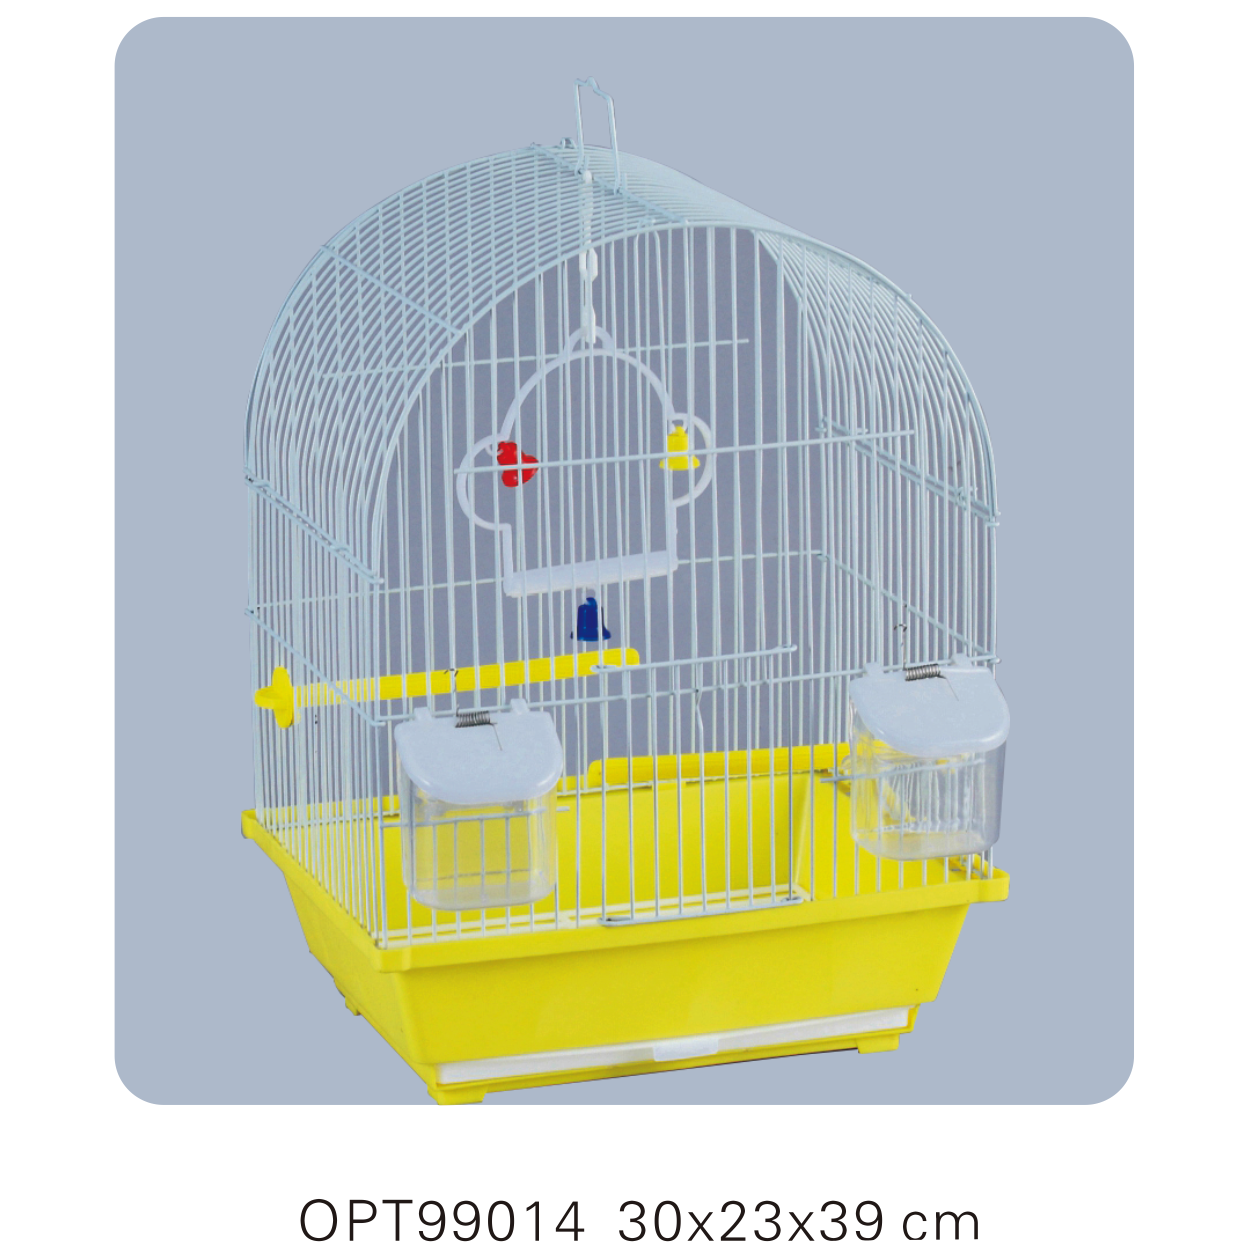 OPT99014 30x23x39cm Bird cages